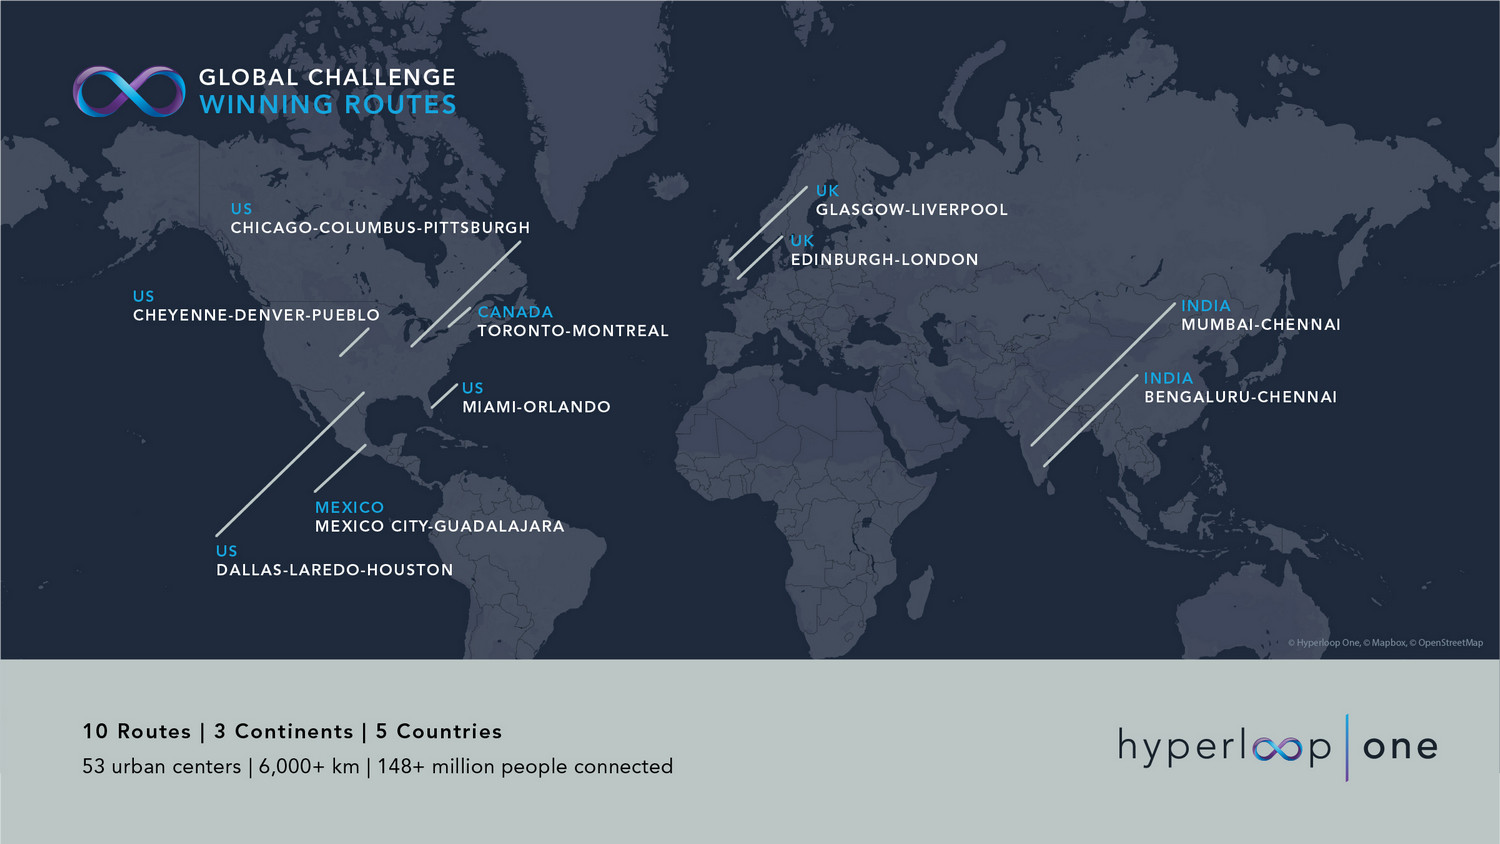 hyperloop-one-final-10-routes.jpg